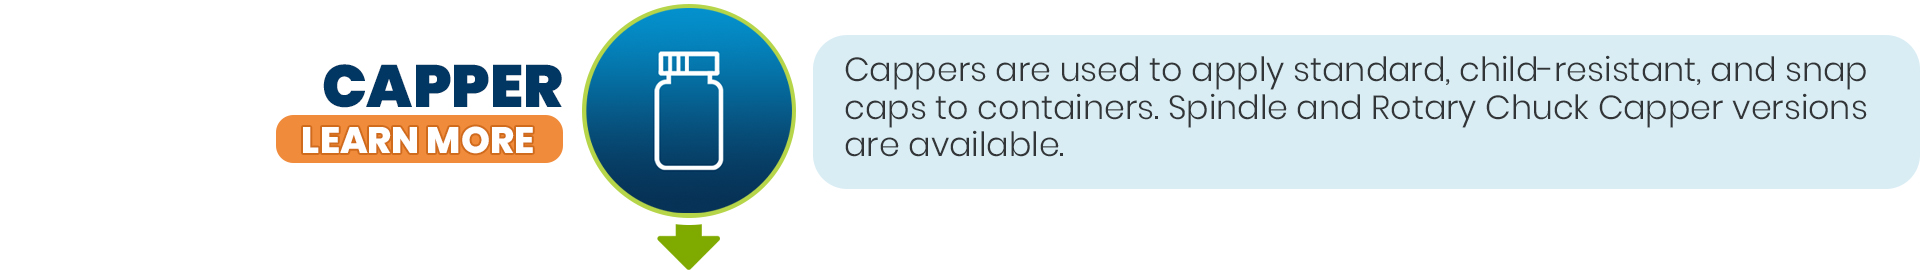 Capper - Block